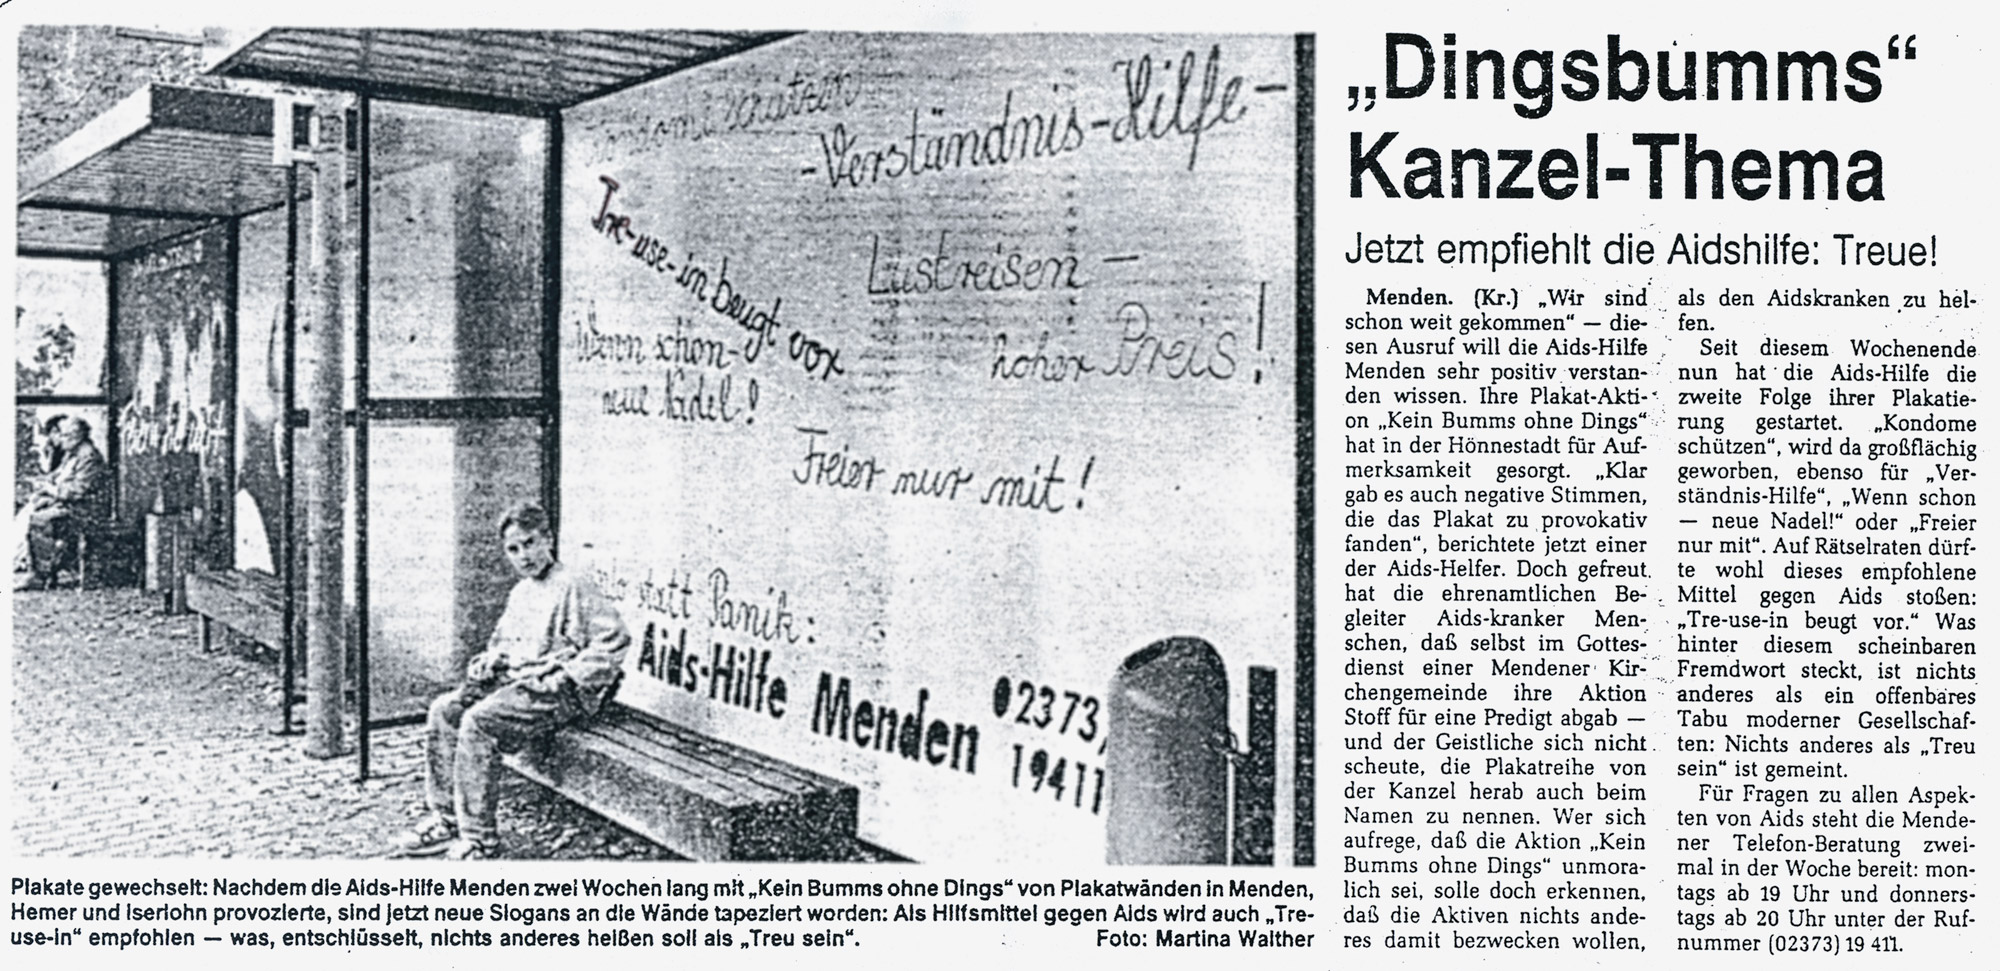 Artikel in der Westfalenpost vom 08.10.1991